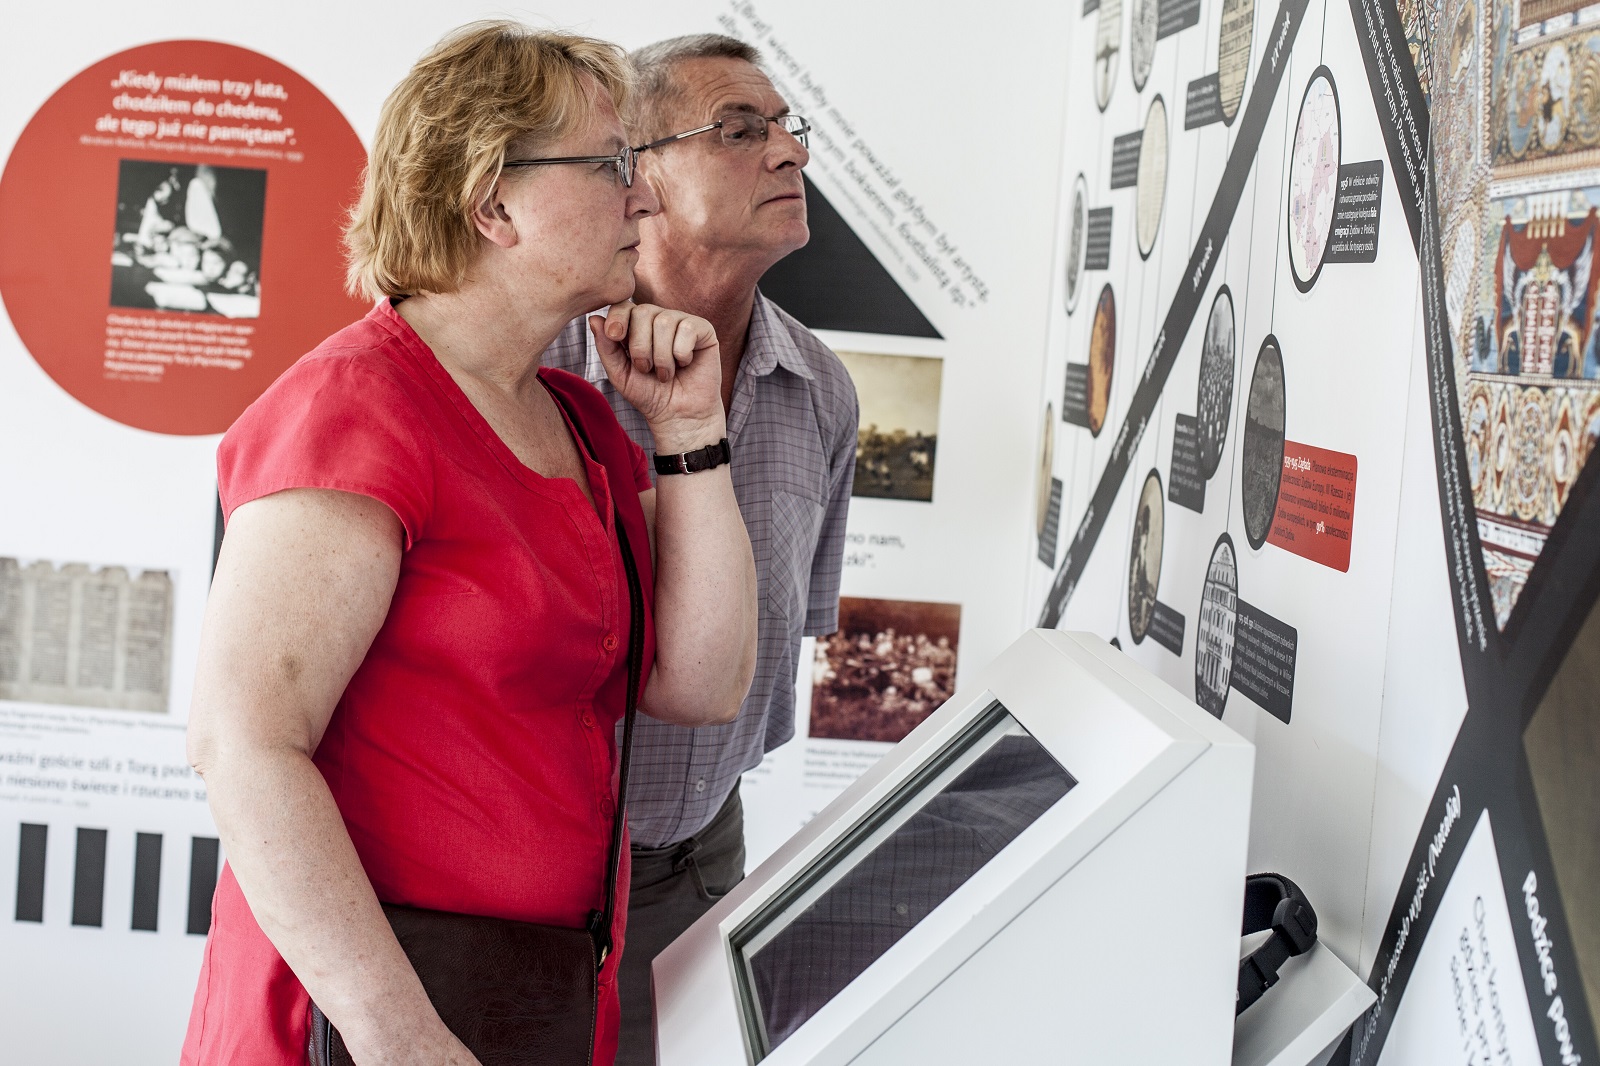 Kobieta i mężczyzna oglądają ekspozycję "Muzeum na kółkach" w Kielcach. Czytają opisy i oglądają zdjęcia umieszczone na ścianie.